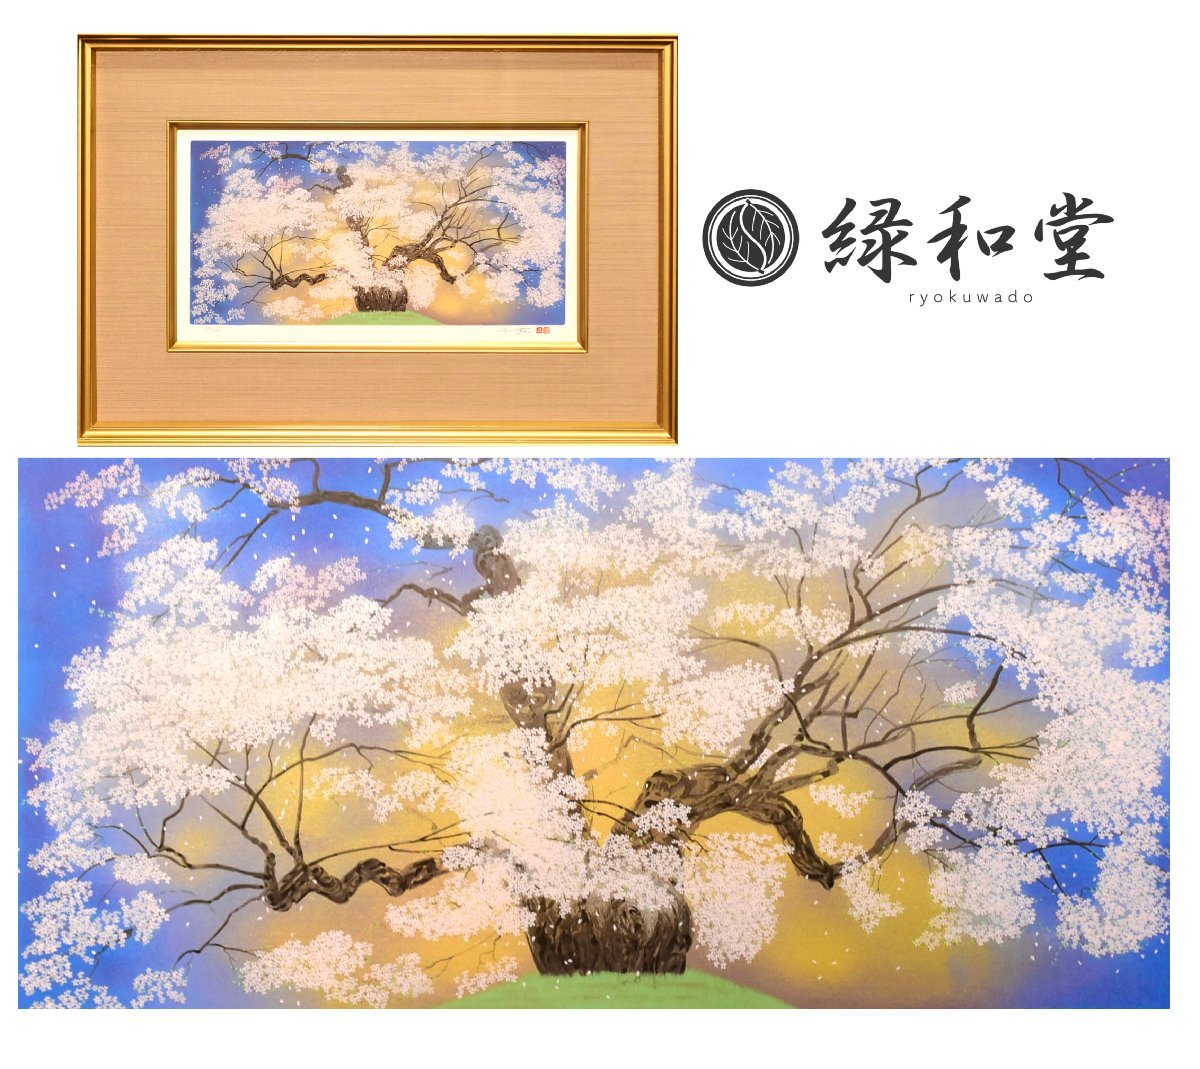 Yahoo!オークション -「桜 絵画」(版画) (美術品)の落札相場・落札価格